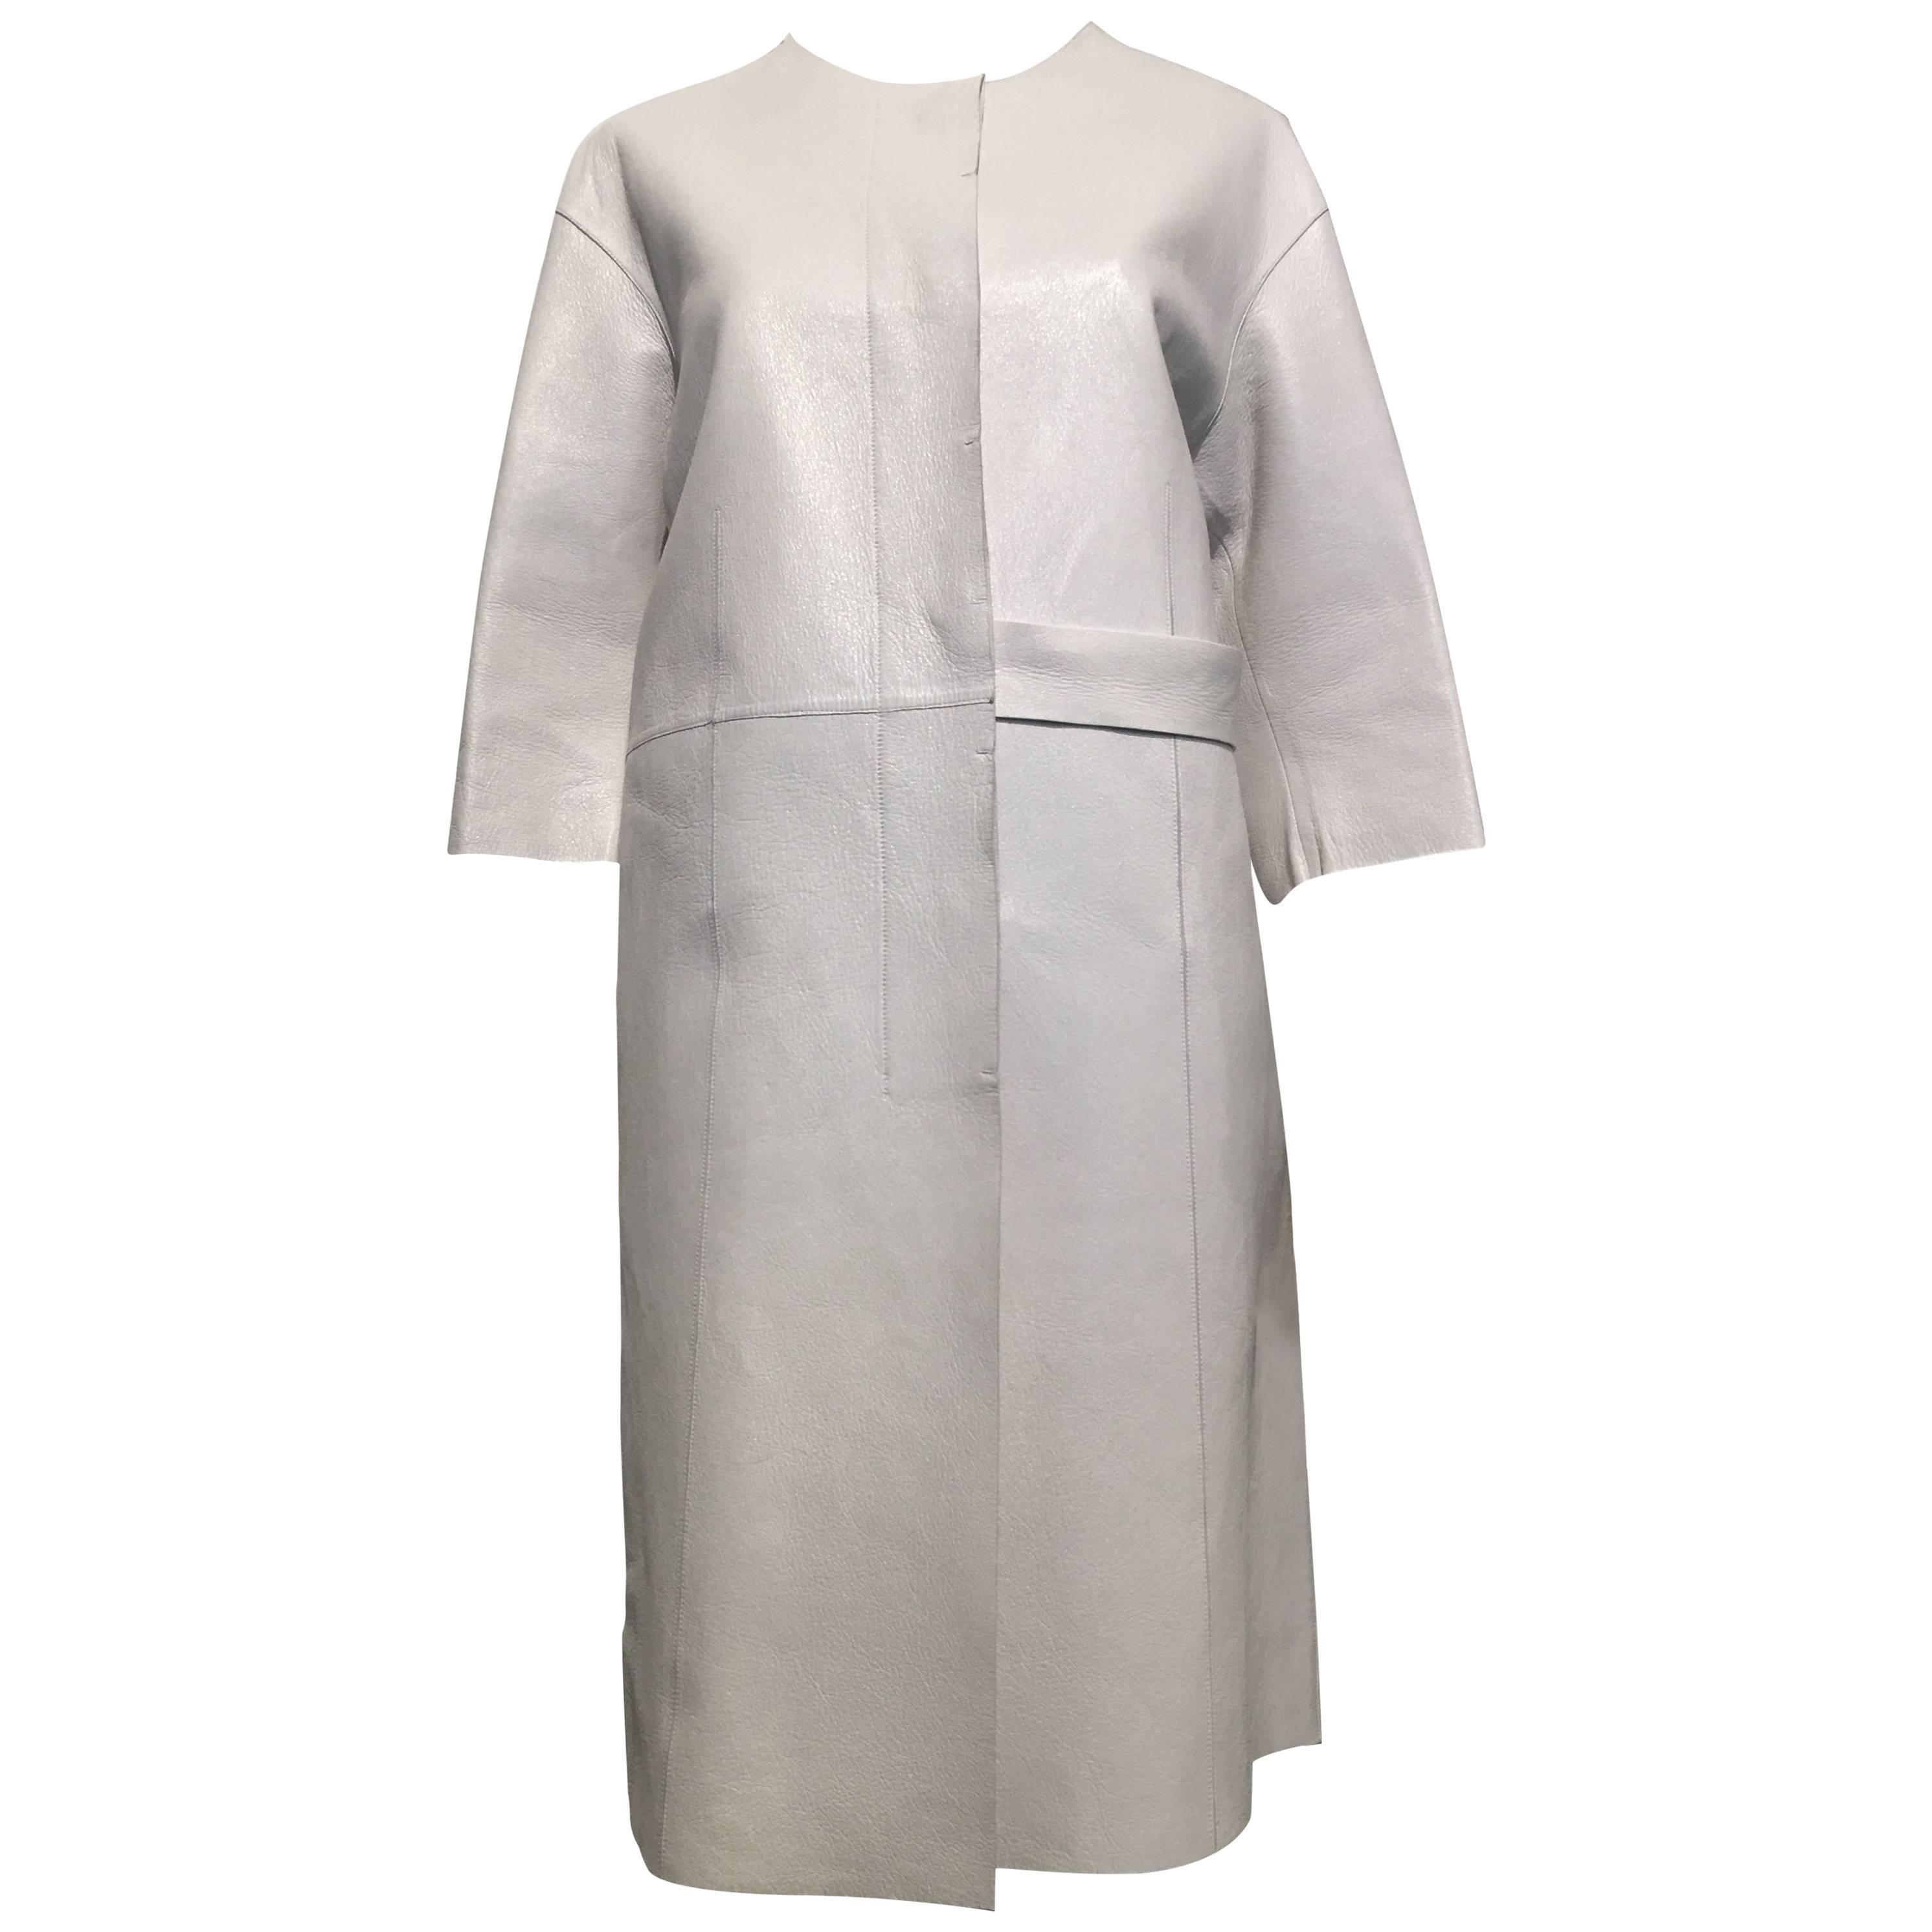 Marni White Leather Coat size 44 (8)